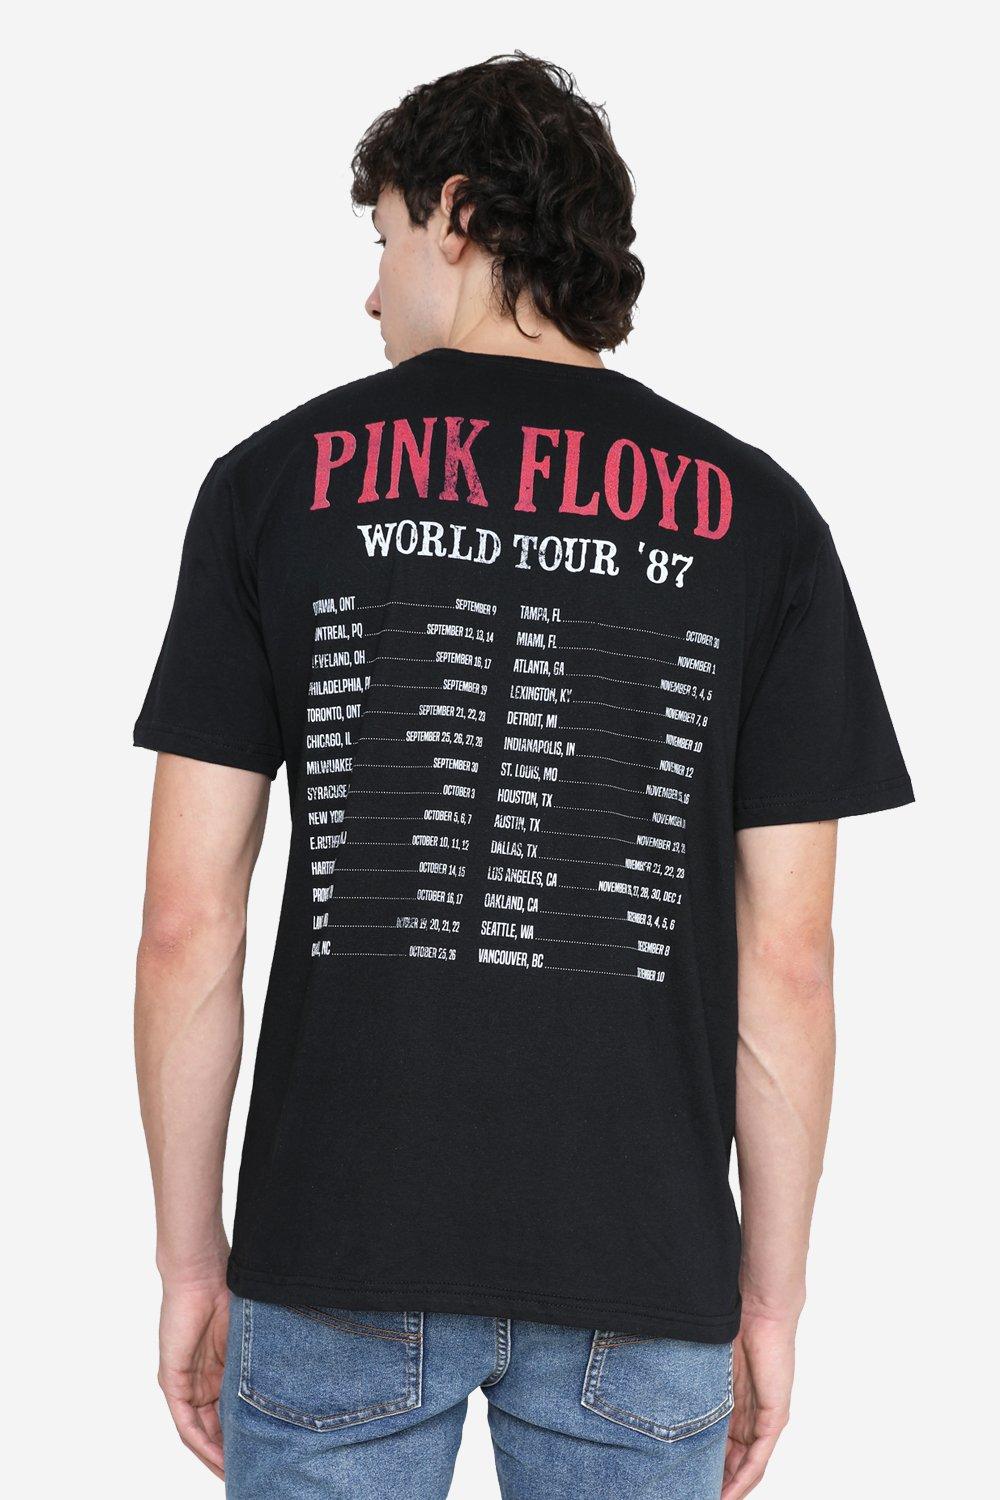 Мужская футболка World Tour Pink Floyd, черный pink floyd pink floyd arnold layne live at syd barrett tribute 2007 limited 45 rpm single 7